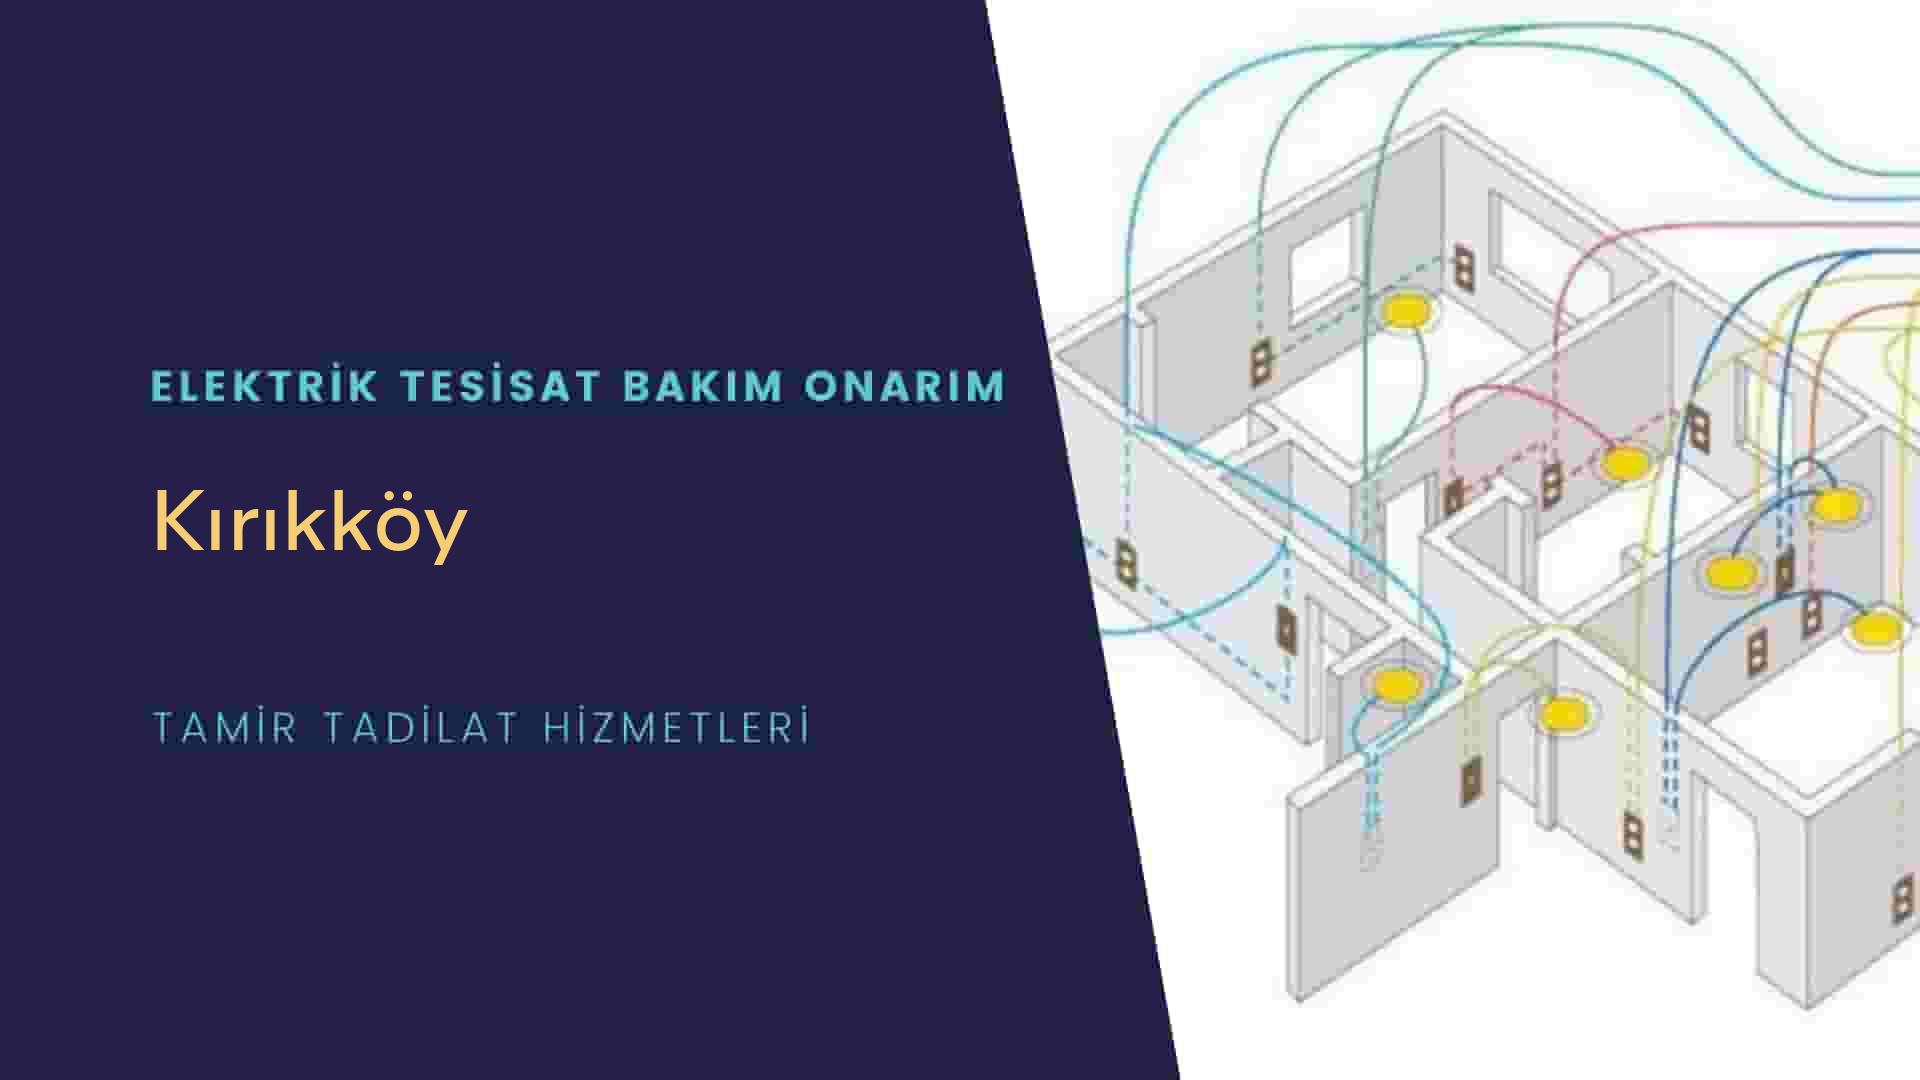 Kırıkköy'de elektrik tesisatı ustalarımı arıyorsunuz doğru adrestenizi Kırıkköy elektrik tesisatı ustalarımız 7/24 sizlere hizmet vermekten mutluluk duyar.